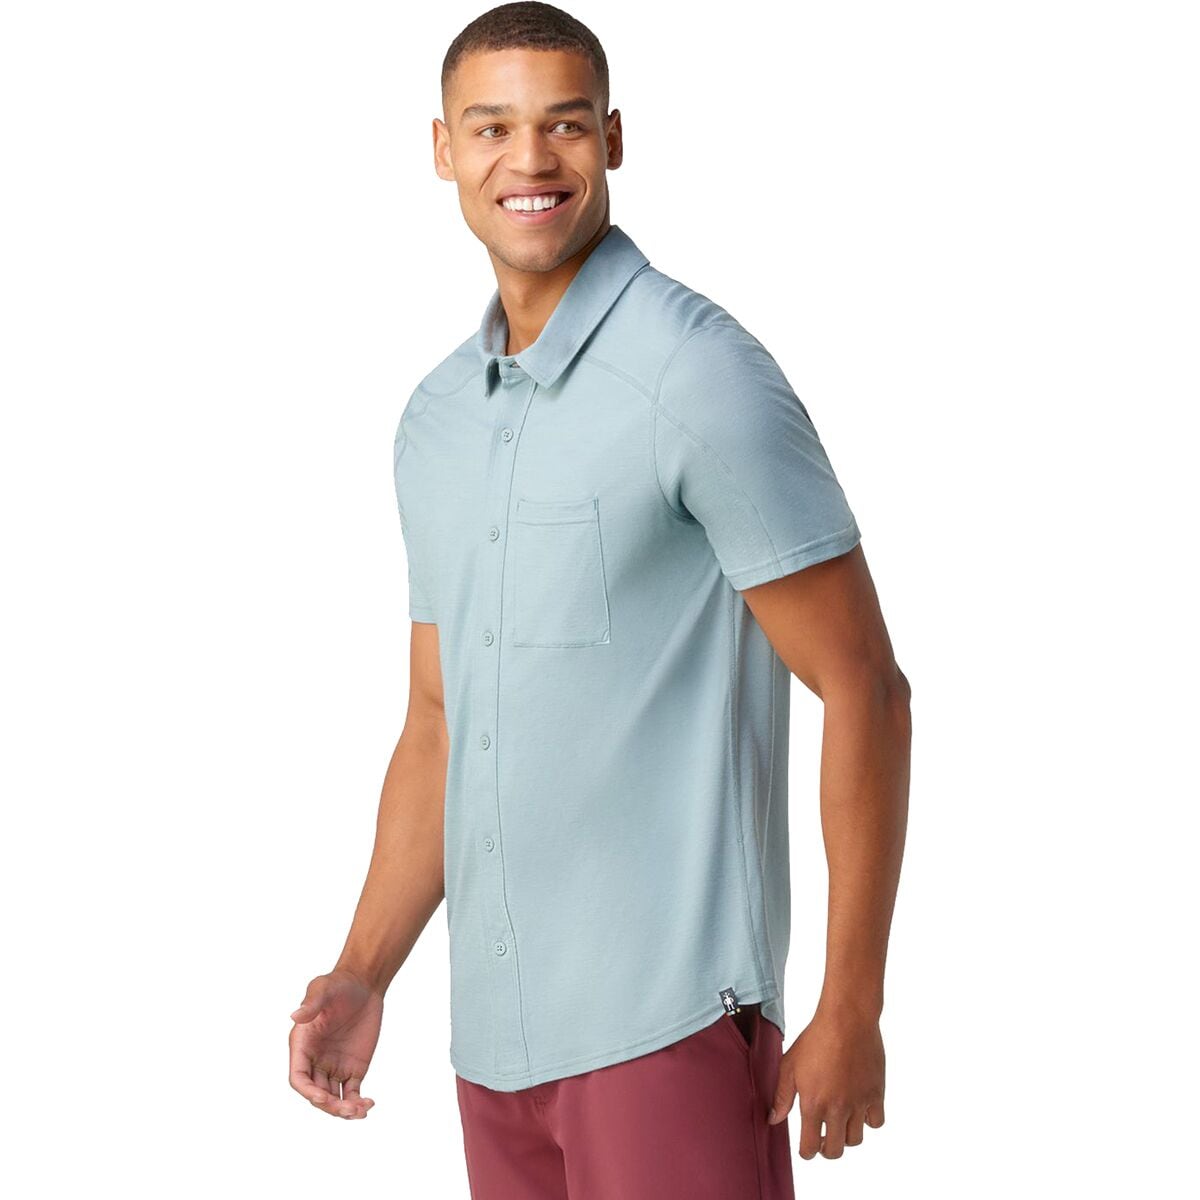 Short-Sleeve Button Down Shirt - Men